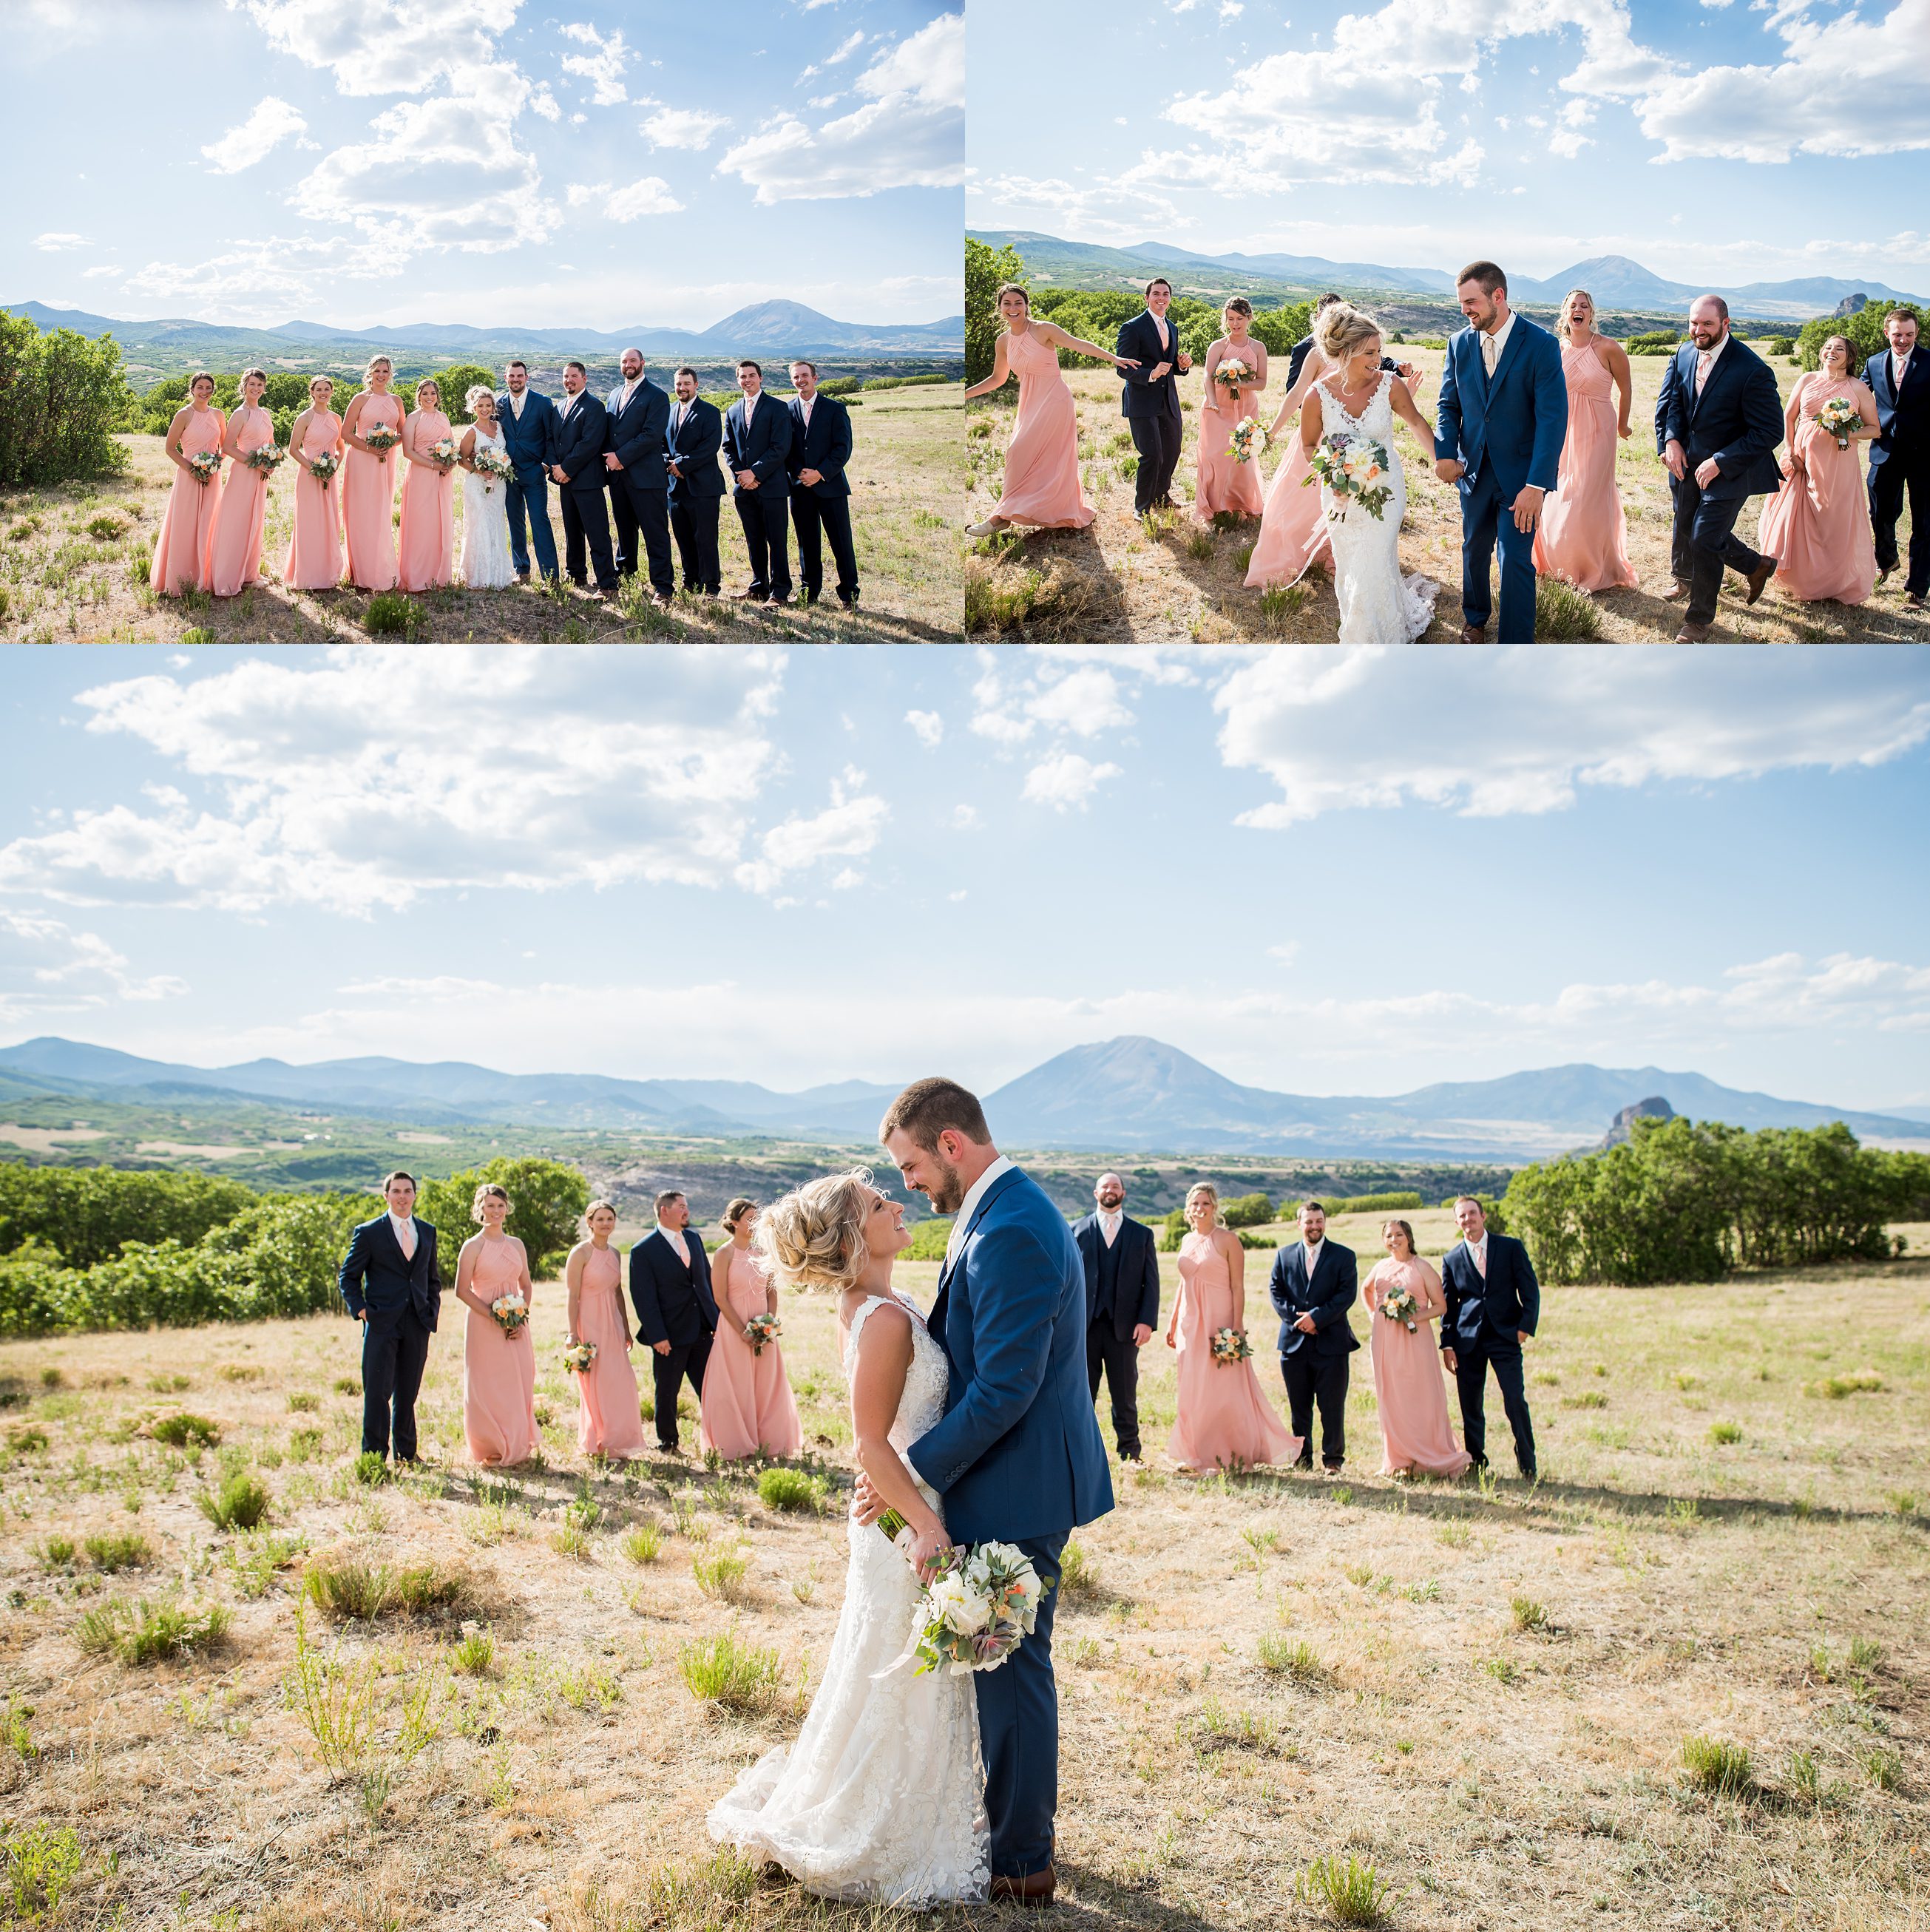  Colorado weddings, Cuchara, Albright Ranch, Colorado Wedding Photographers, Wedding party photos